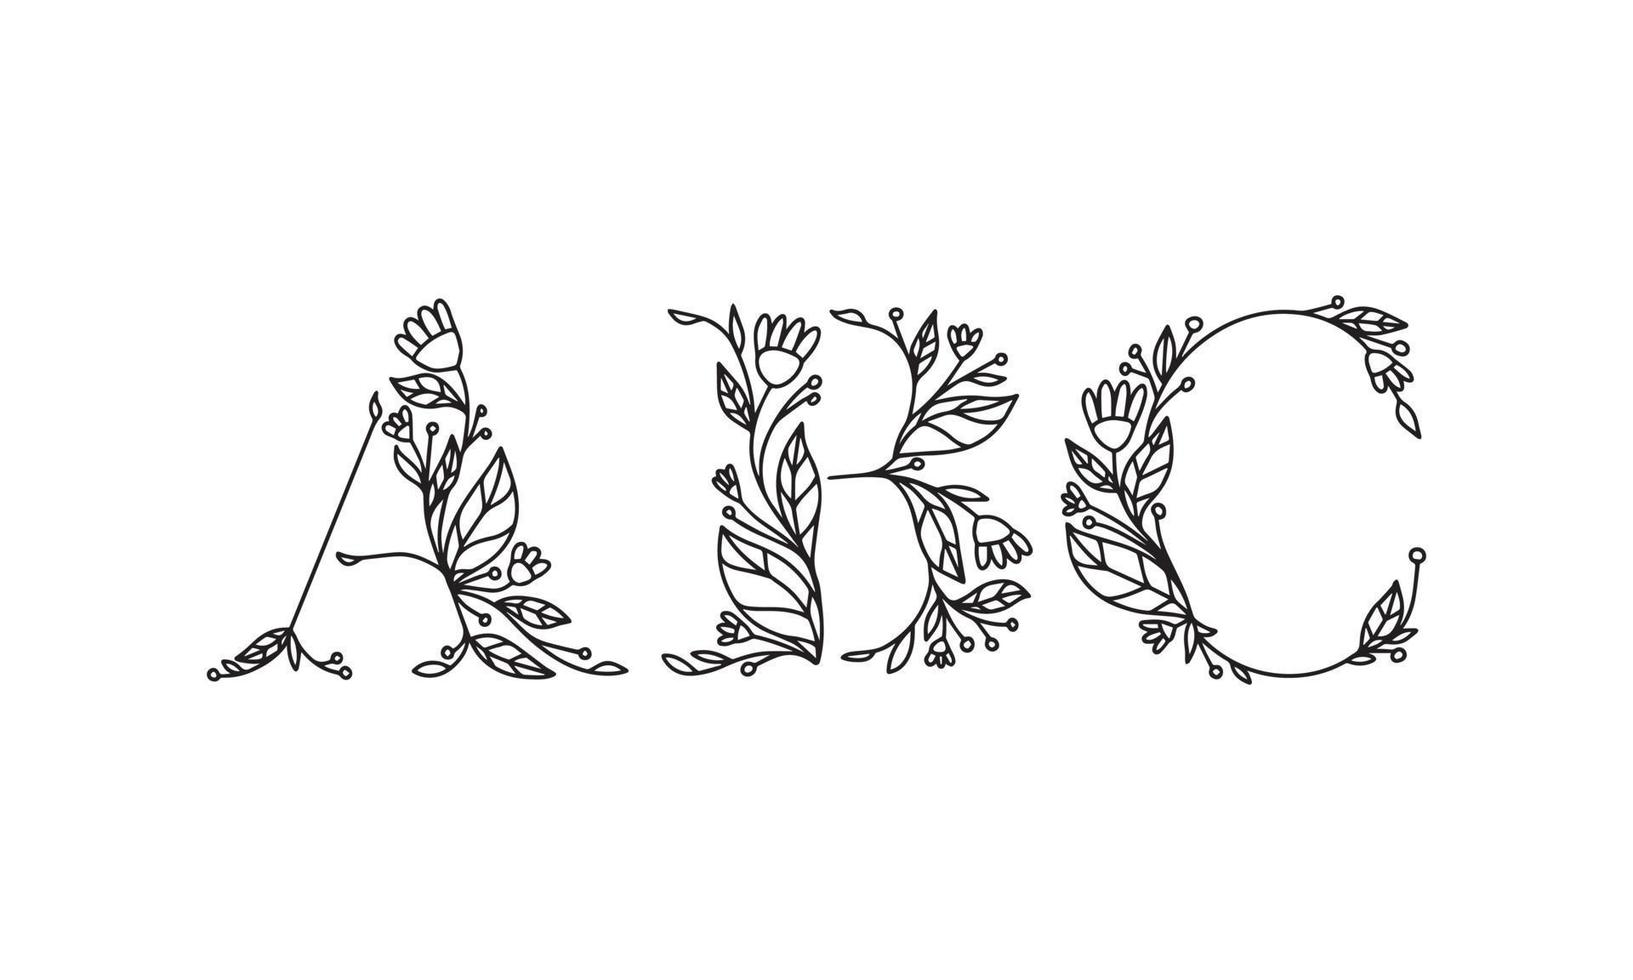 illustrazione floreale alfabeto carattere grafico vettoriale realizzato da fiori e foglie pianta creativa linea arte disegnata a mano per natura astratta e naturale lo stile sembra in un design monocromatico unico decorazione